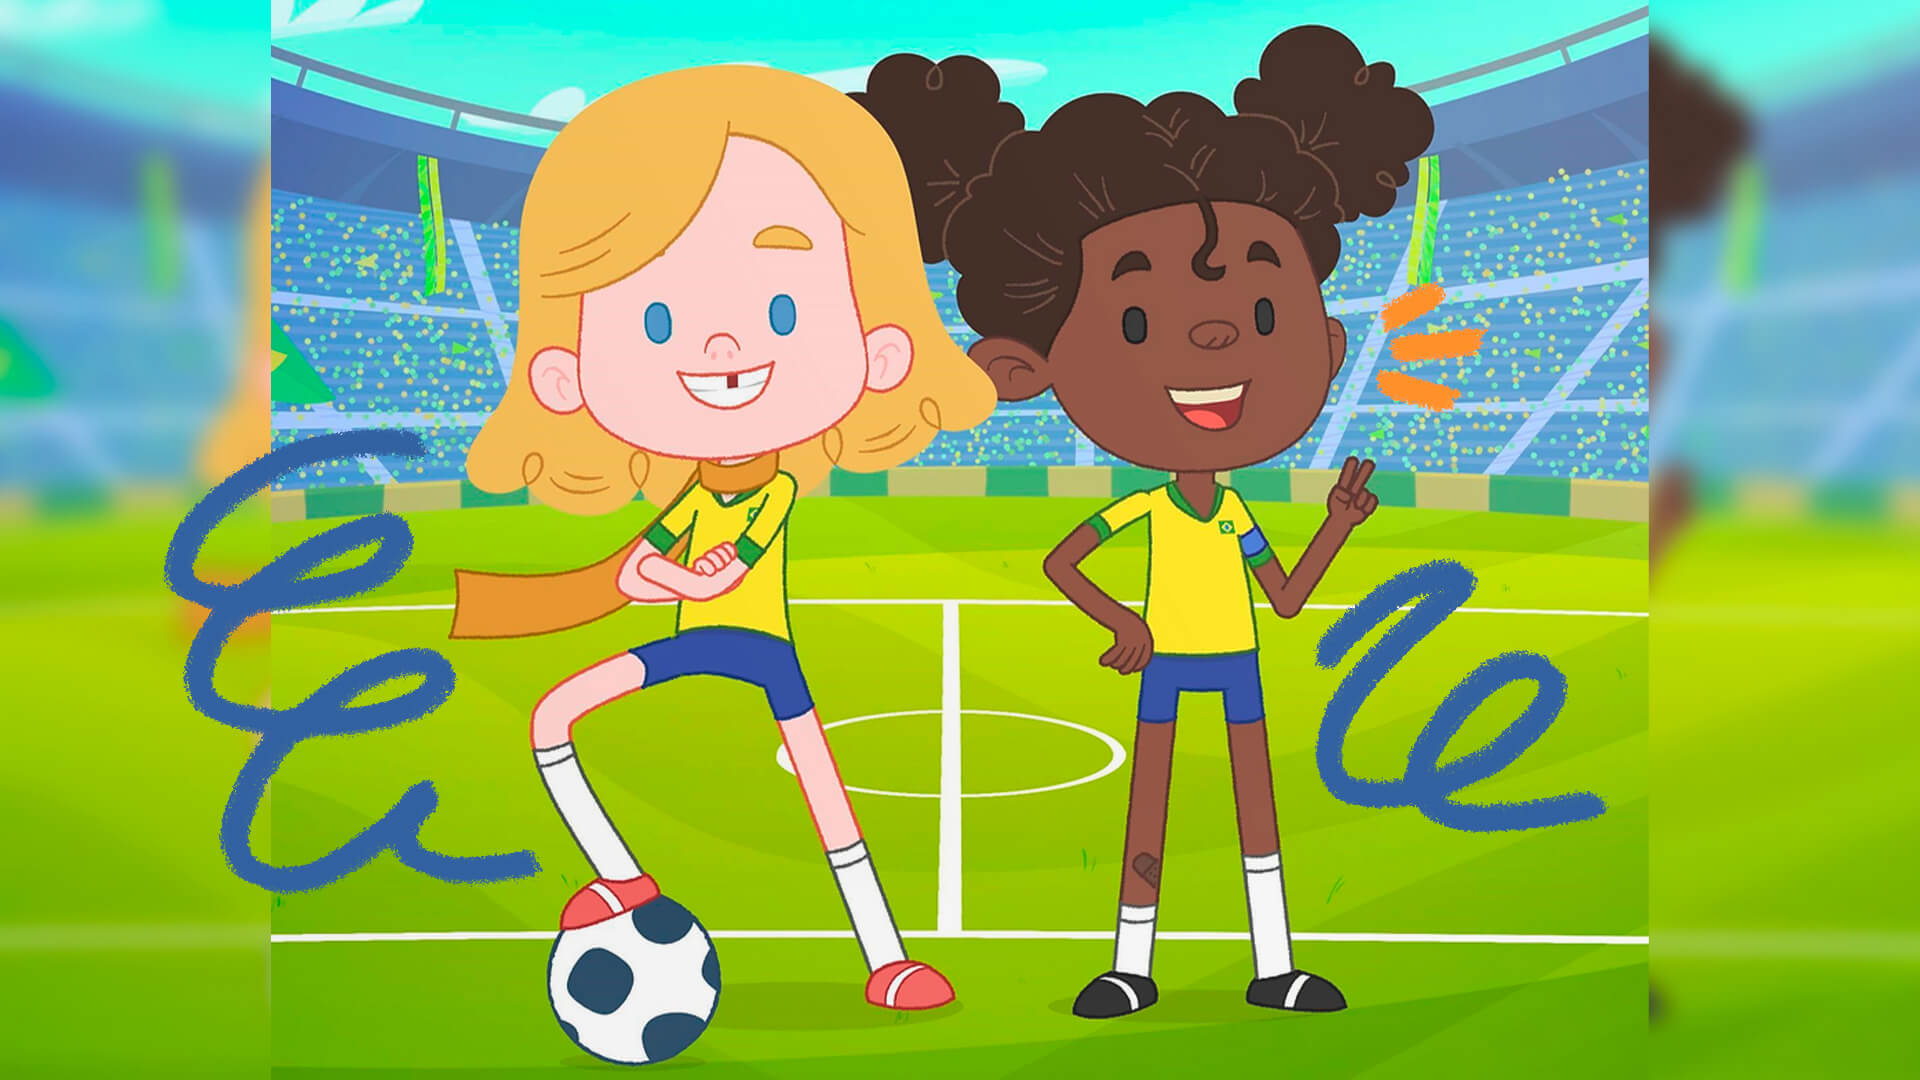 Meninas no futebol: cena do episódio “As meninas da seleção” da Turma da Bola.